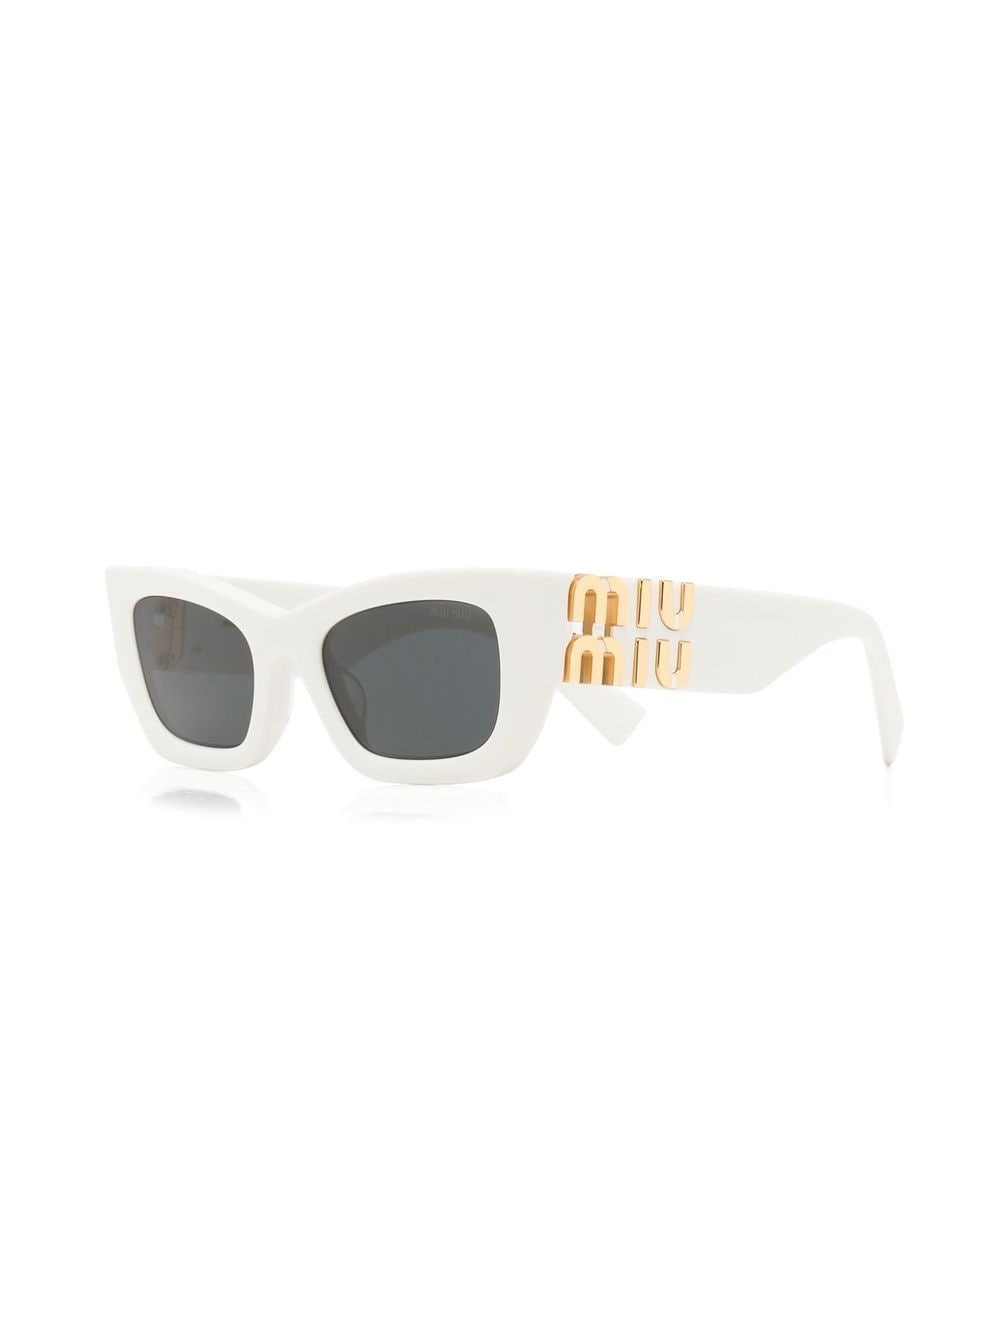 142センチレンズ高さmiumiu ミュウミュウ SOLE Sunglasses 15H-09S ソルサングラス グリーンフレーム グラデーションレンズ メタルサイドロゴ アイウェア